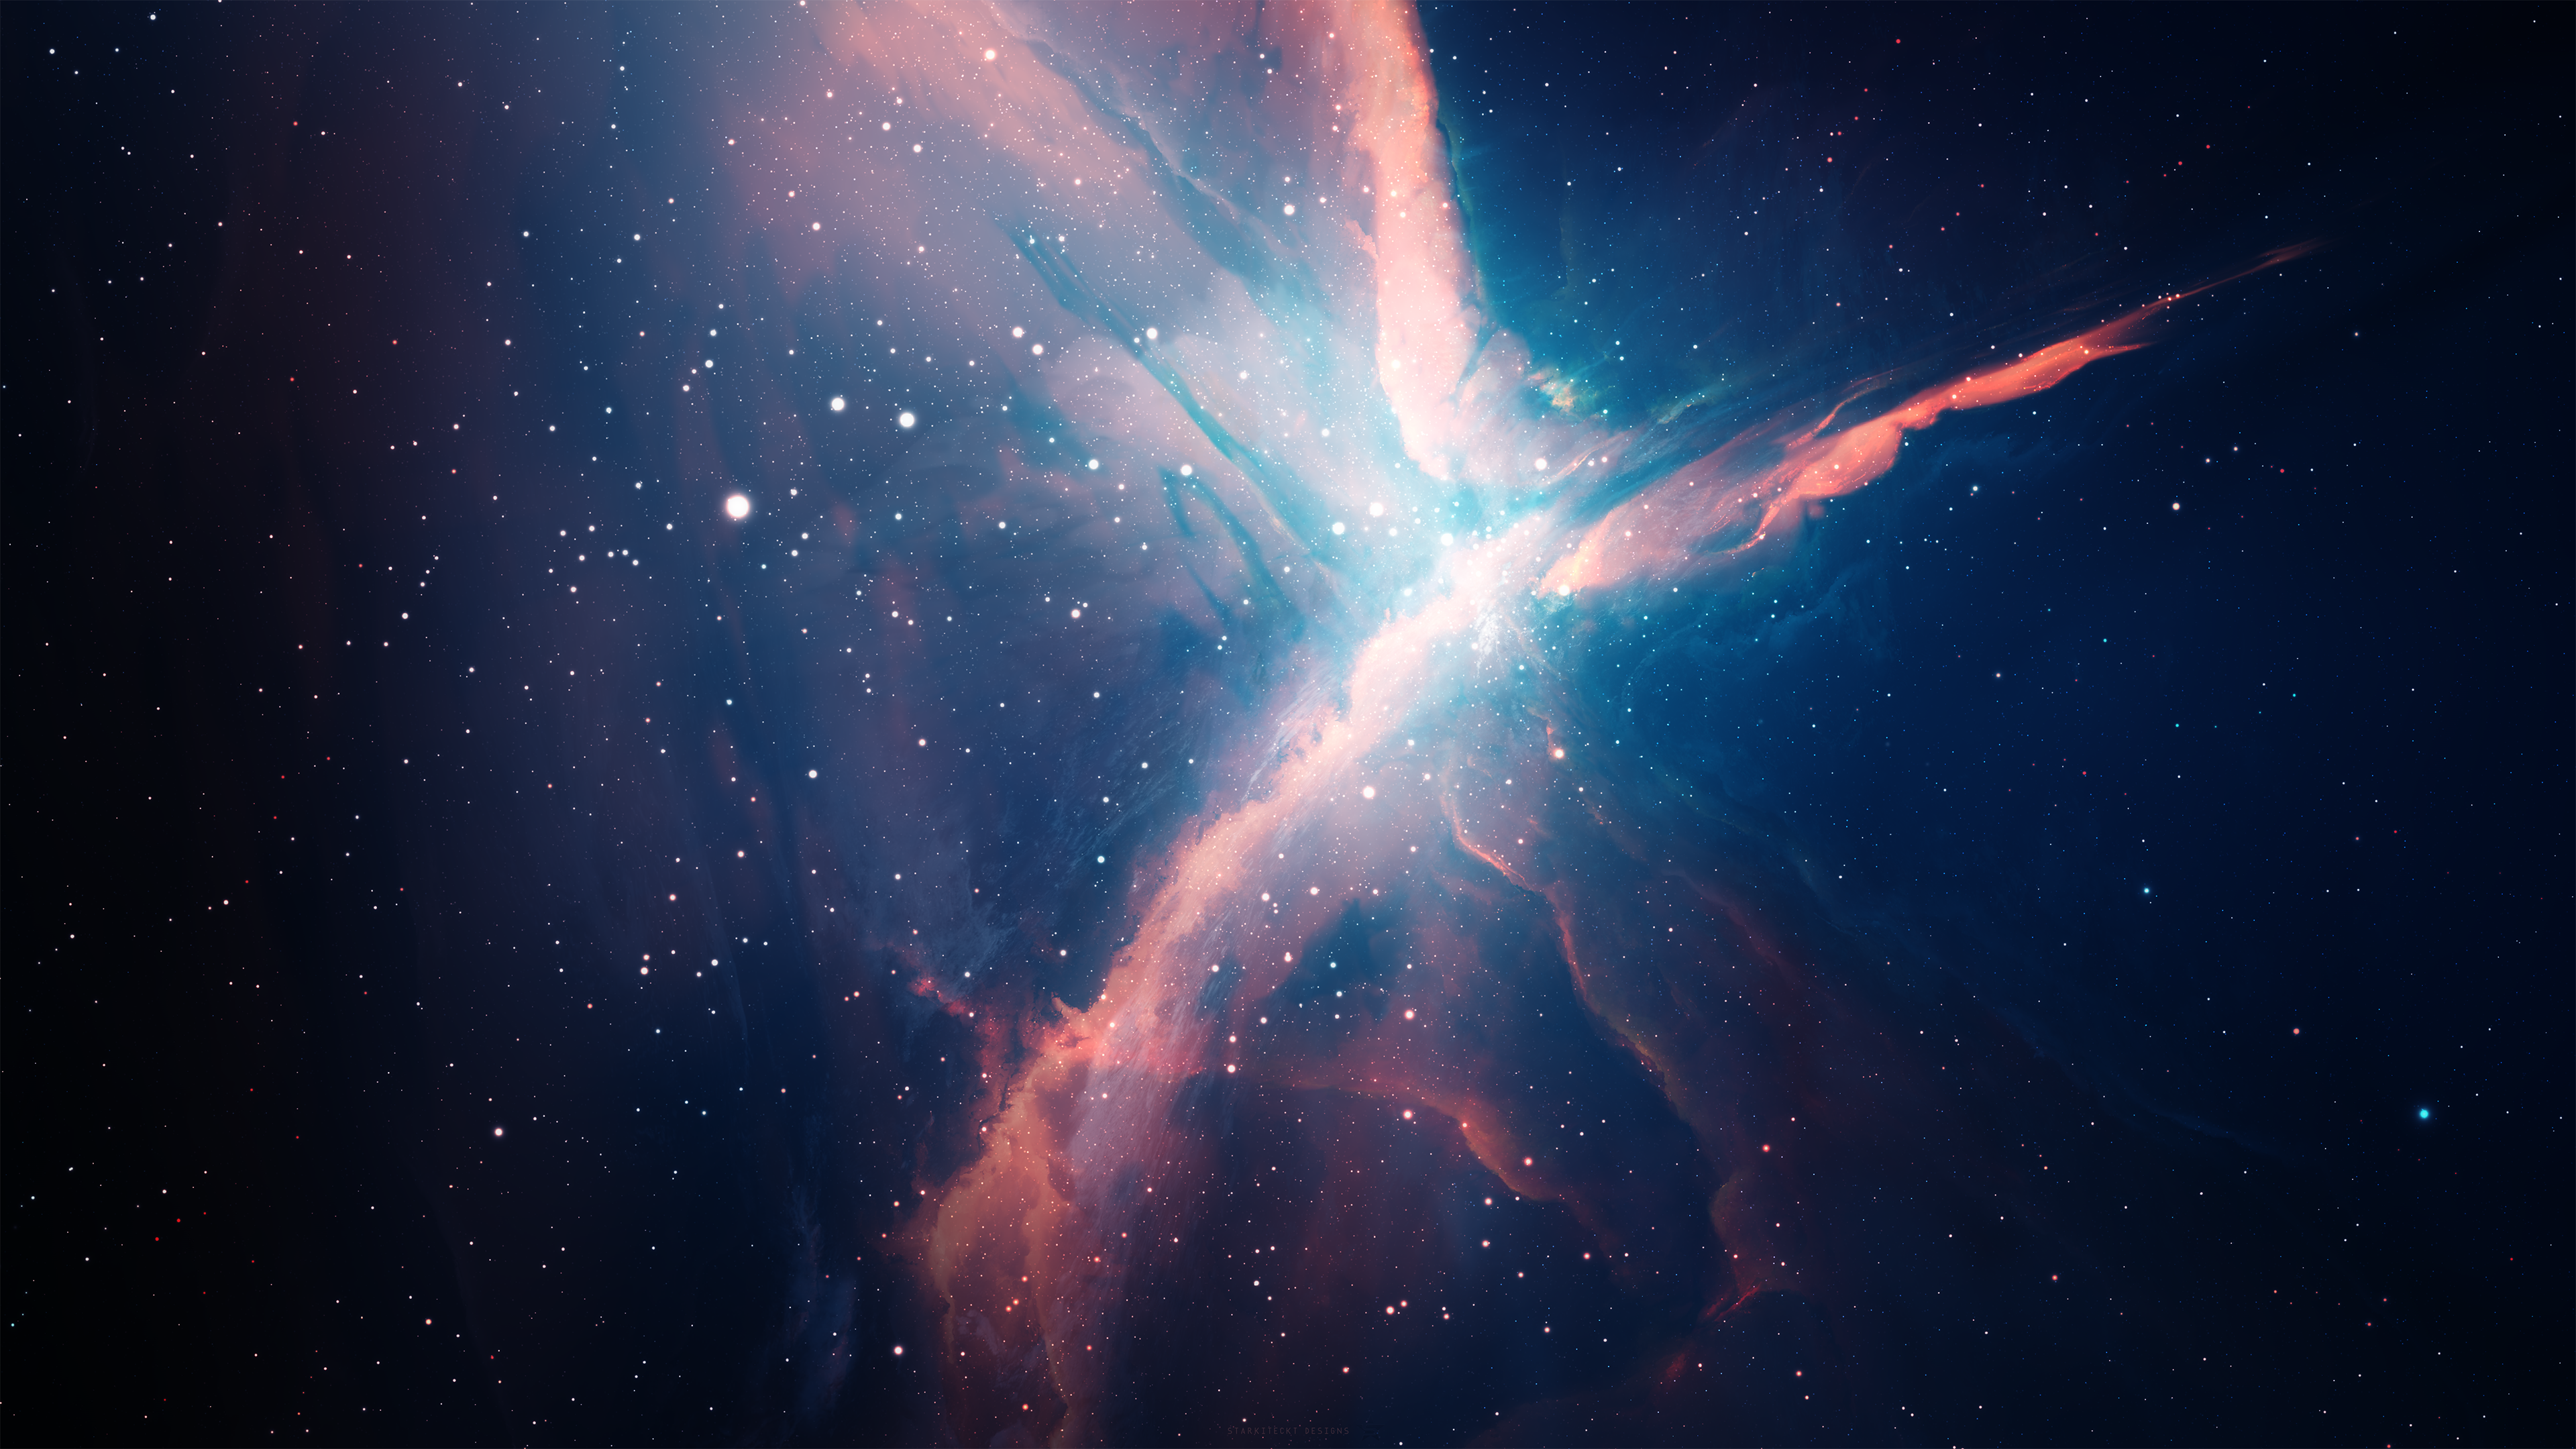 Eden Nebula by Starkiteckt on DeviantArt